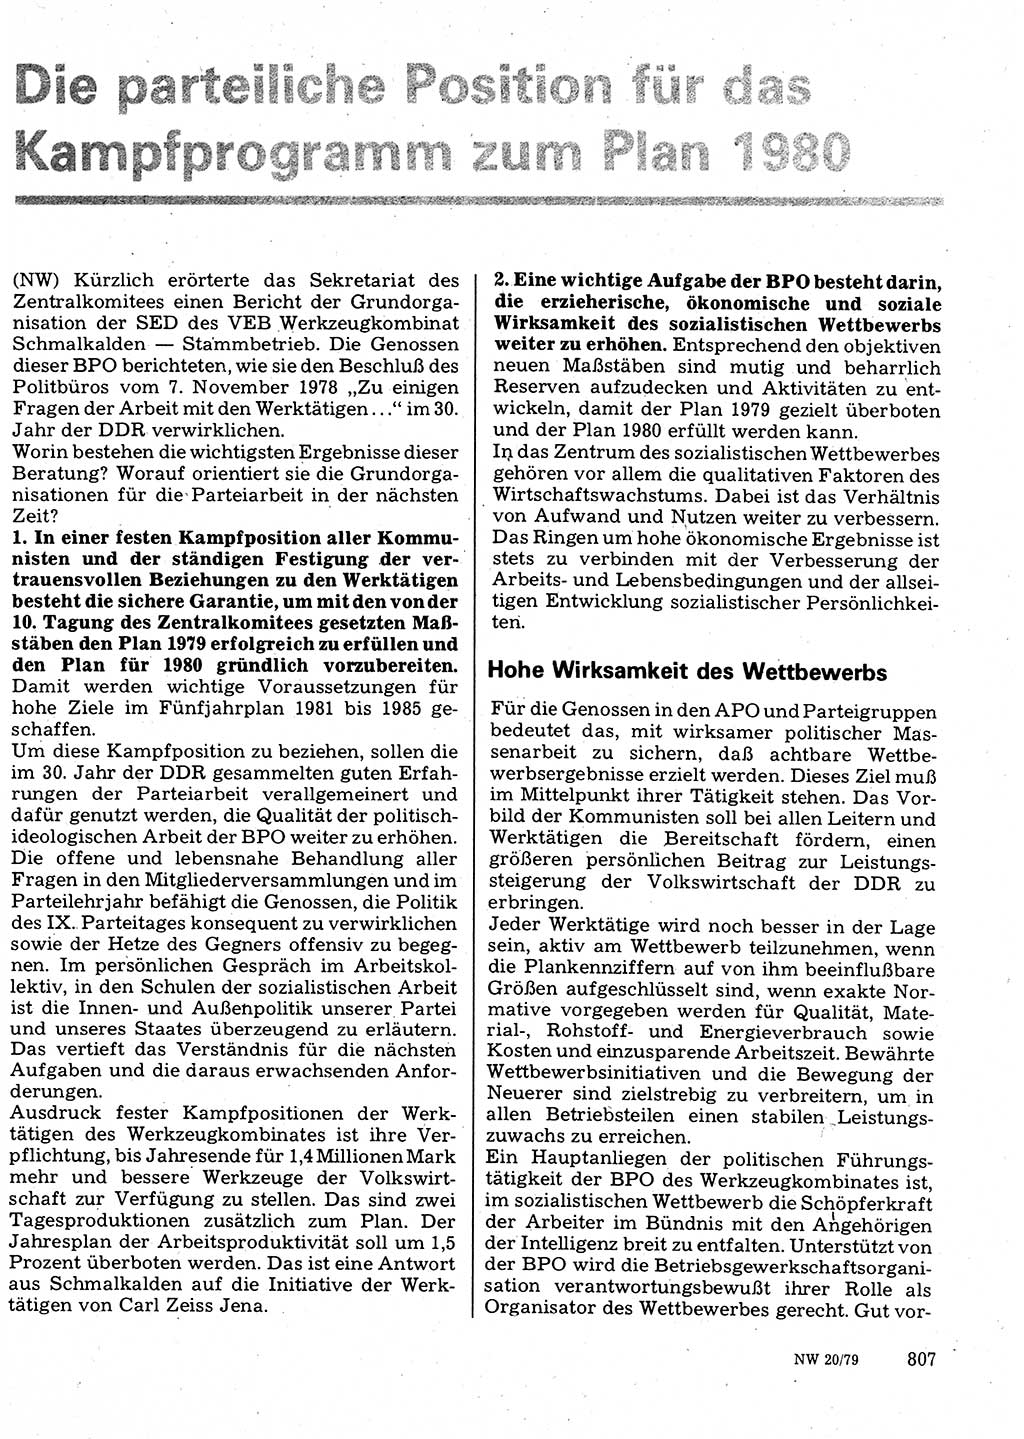 Neuer Weg (NW), Organ des Zentralkomitees (ZK) der SED (Sozialistische Einheitspartei Deutschlands) für Fragen des Parteilebens, 34. Jahrgang [Deutsche Demokratische Republik (DDR)] 1979, Seite 807 (NW ZK SED DDR 1979, S. 807)